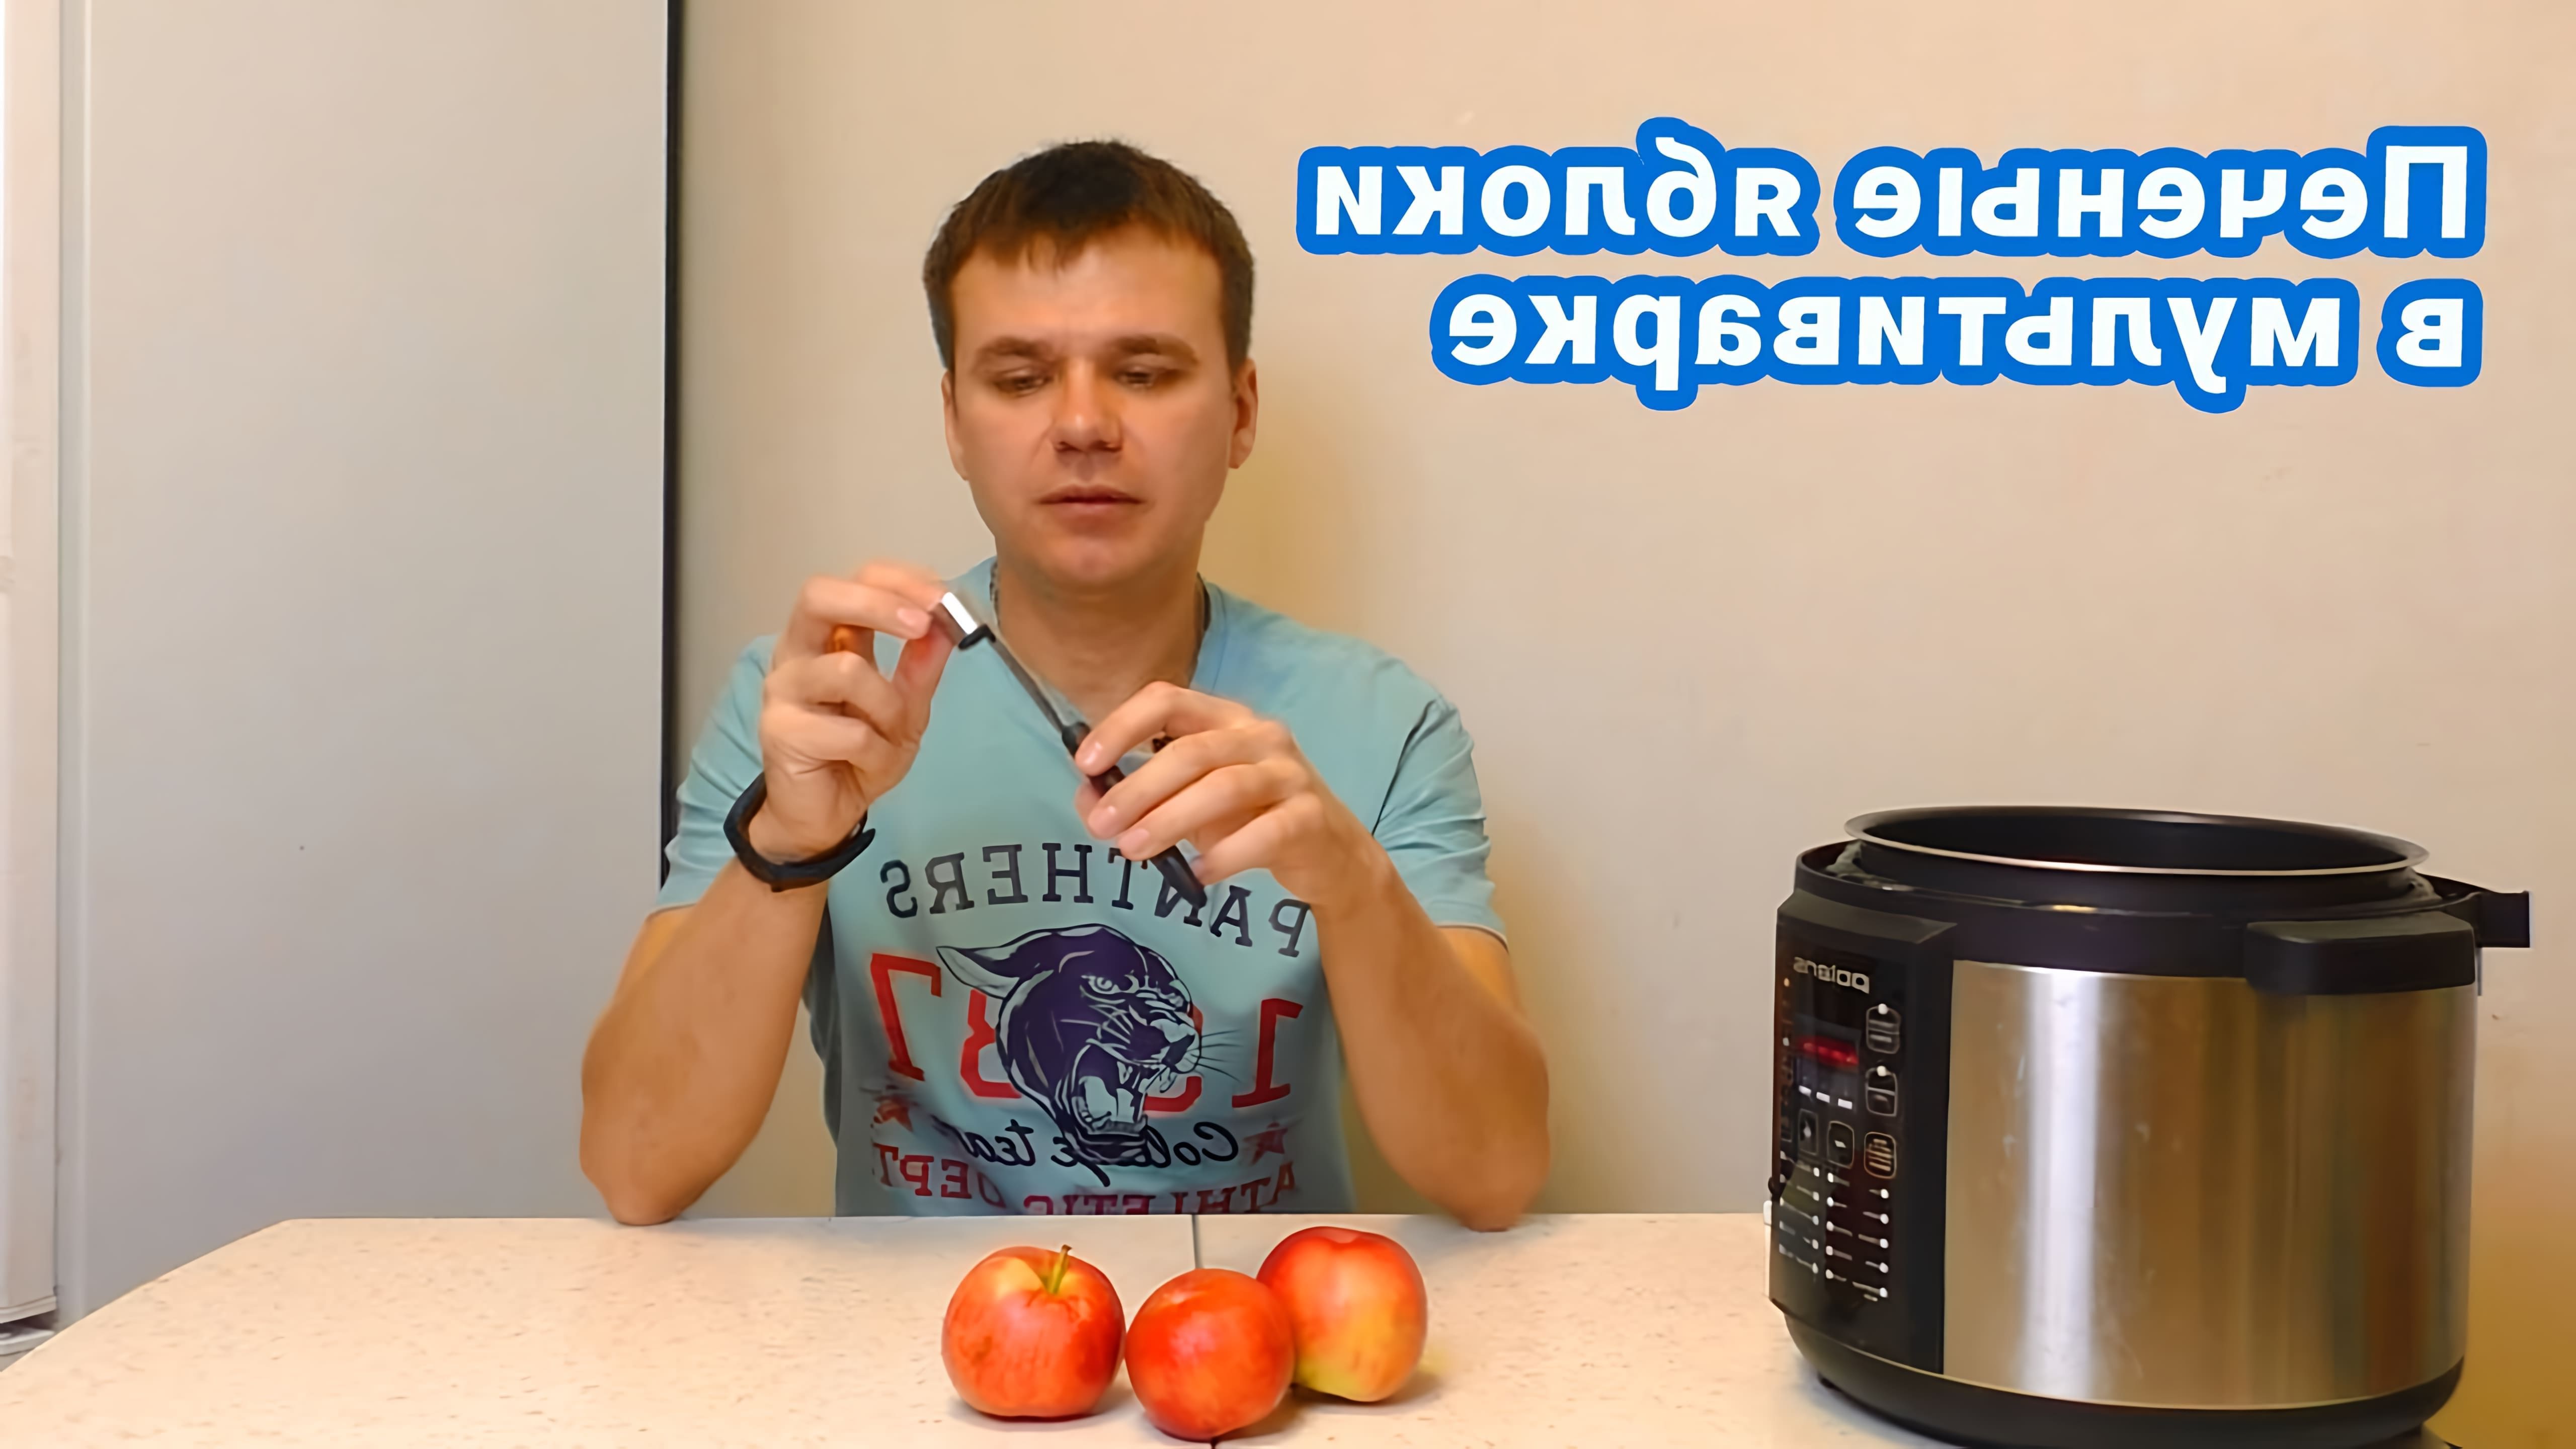 В этом видео демонстрируется процесс приготовления печеных яблок в мультиварке